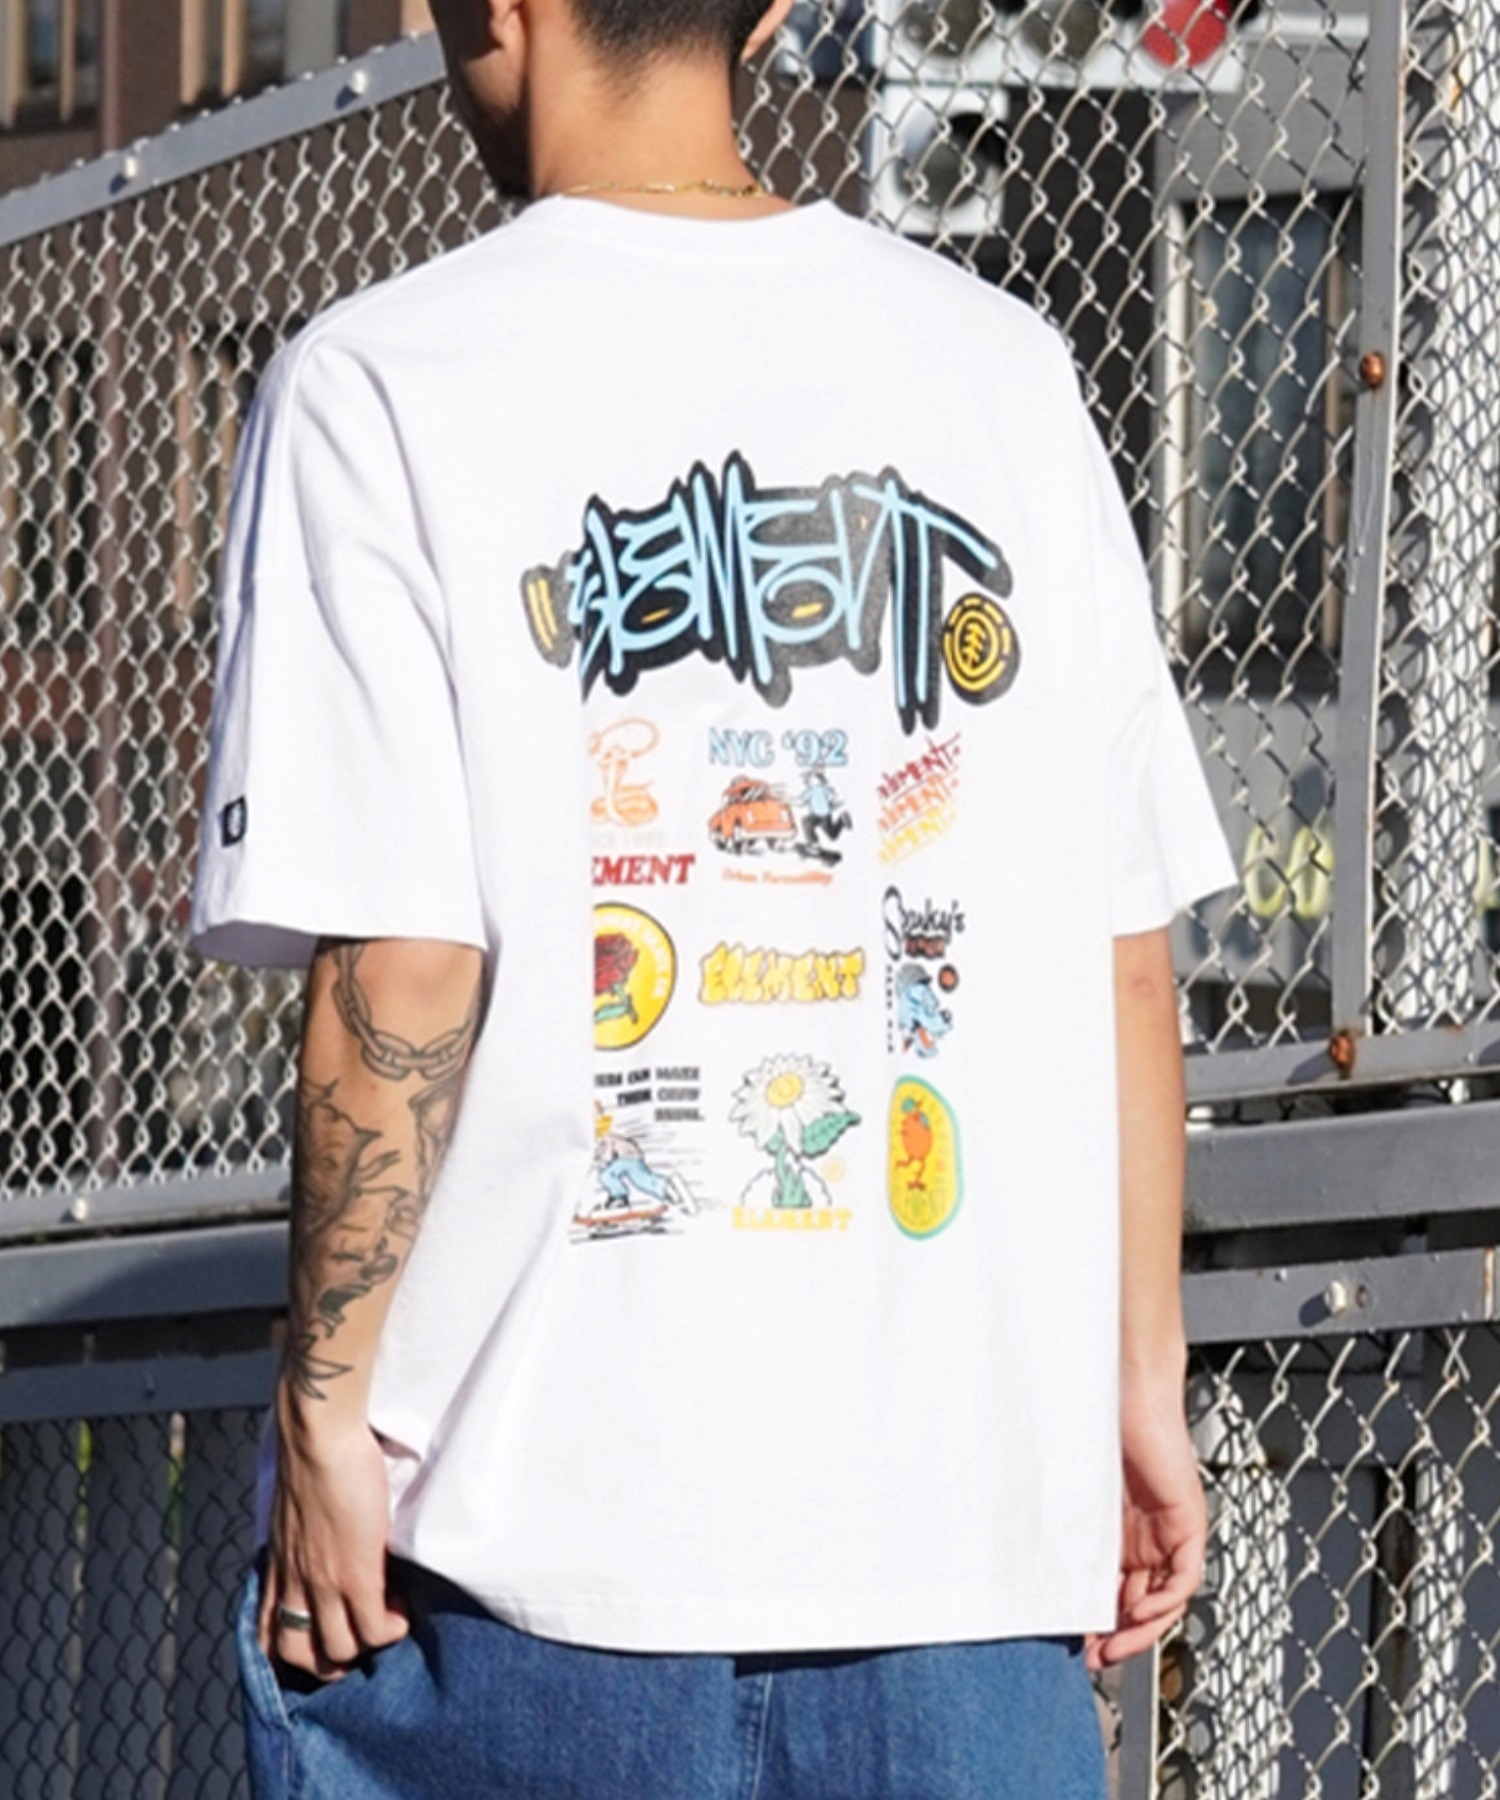 ELEMENT エレメント メンズ 半袖 Tシャツ オーバーサイズ バックプリント クルーネック タギング グラフィティ BE021-251(FBK-M)